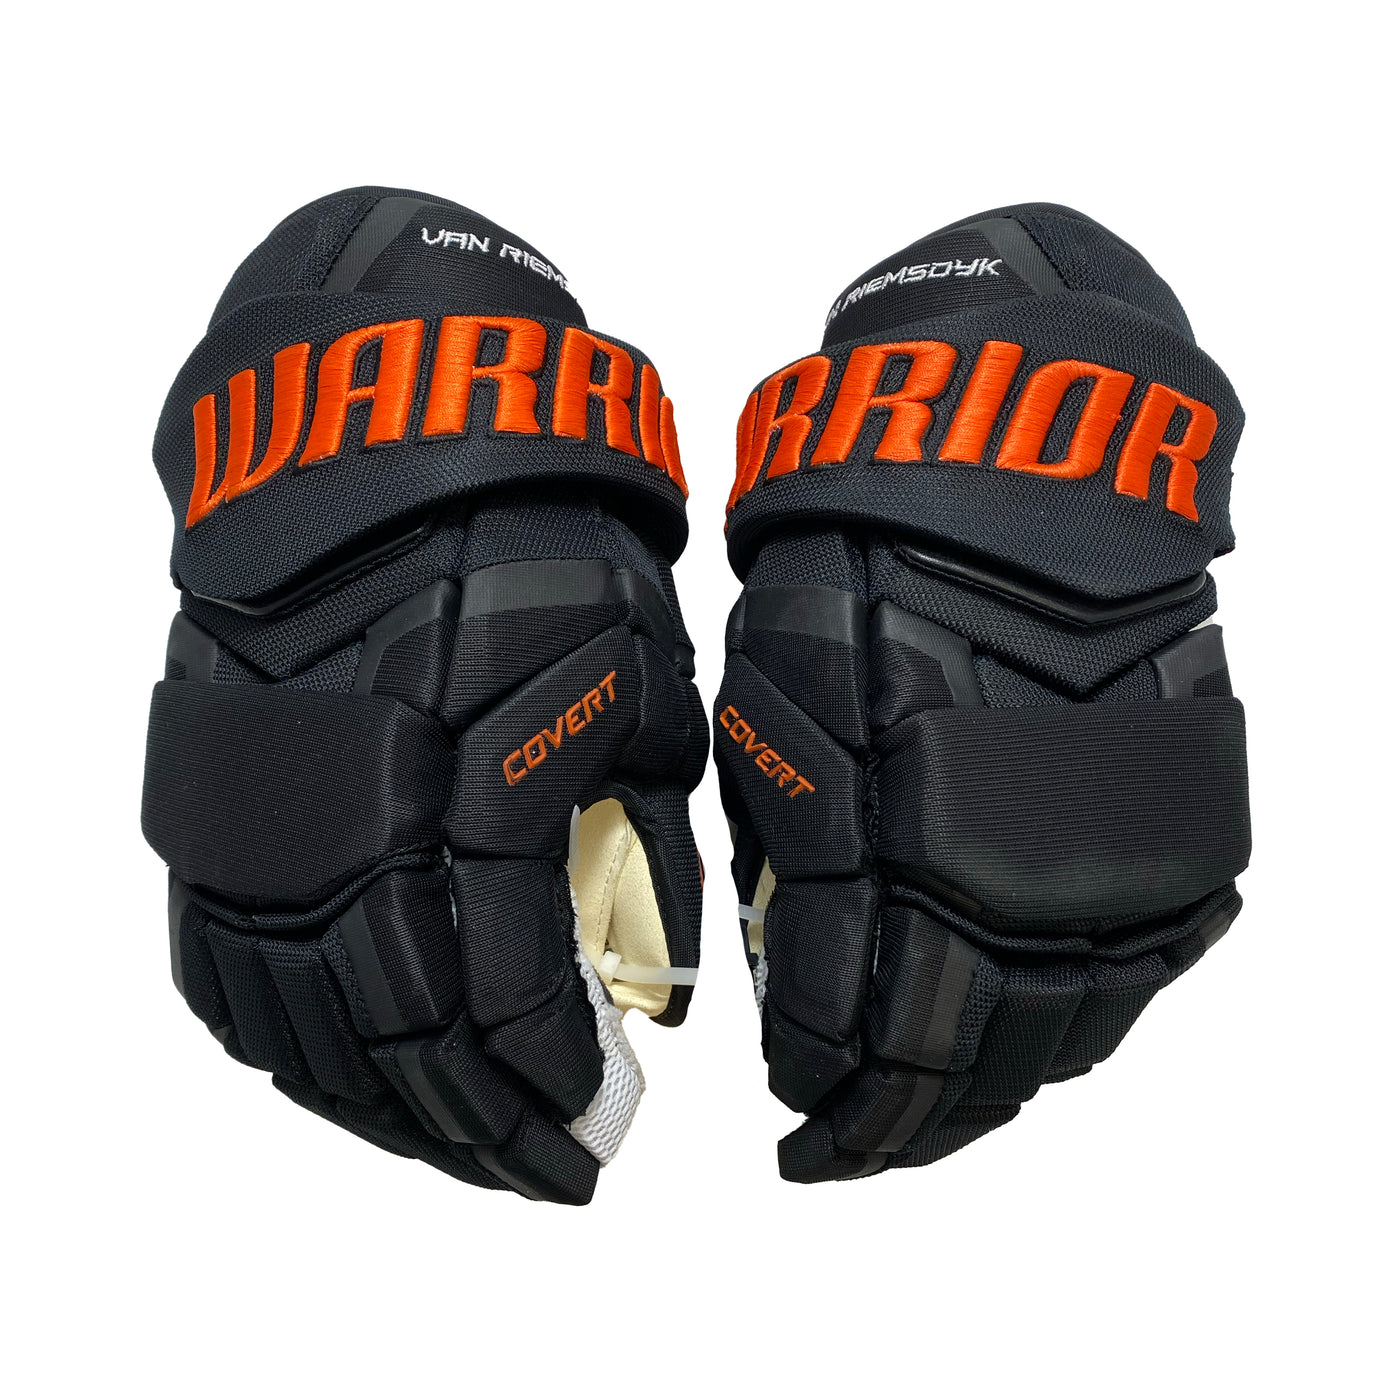 Warrior Covert QRE - Philadelphia Flyers - Pro Stock Glove - James van Riemsdyk